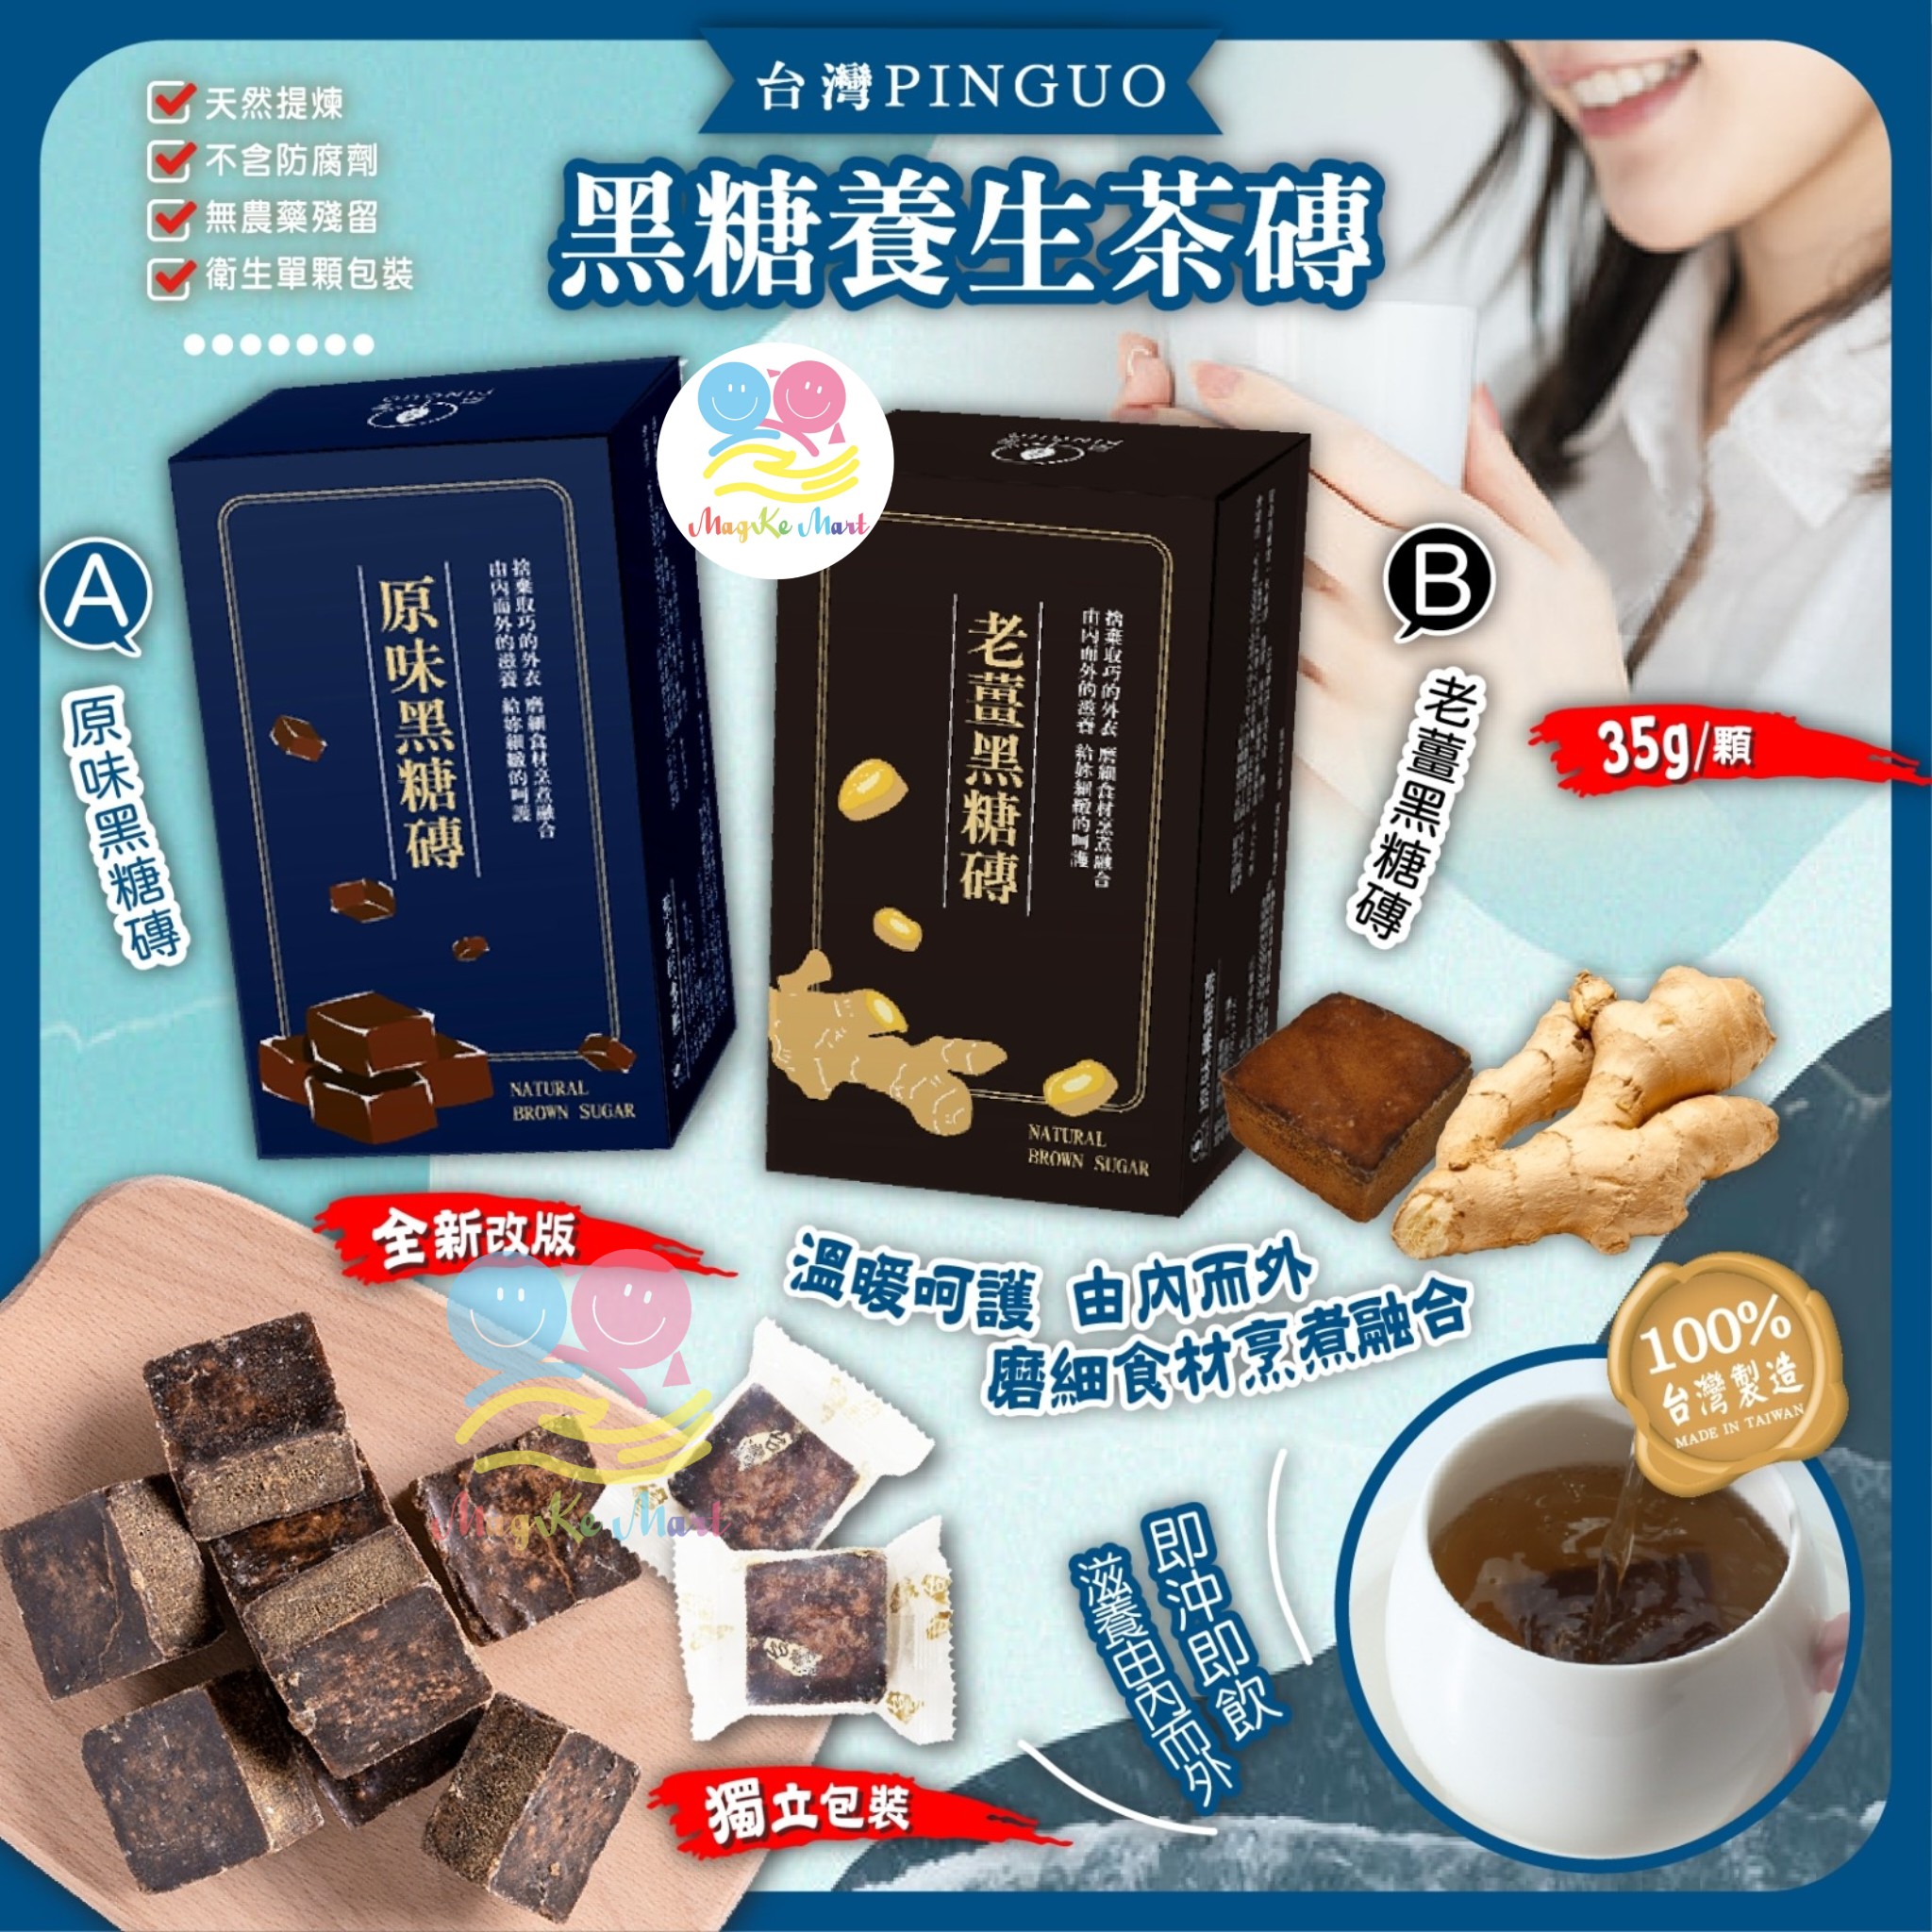 台灣 PINGUO 黑糖養生茶磚(暖身系列)(1盒6粒) (A) 原味黑糖